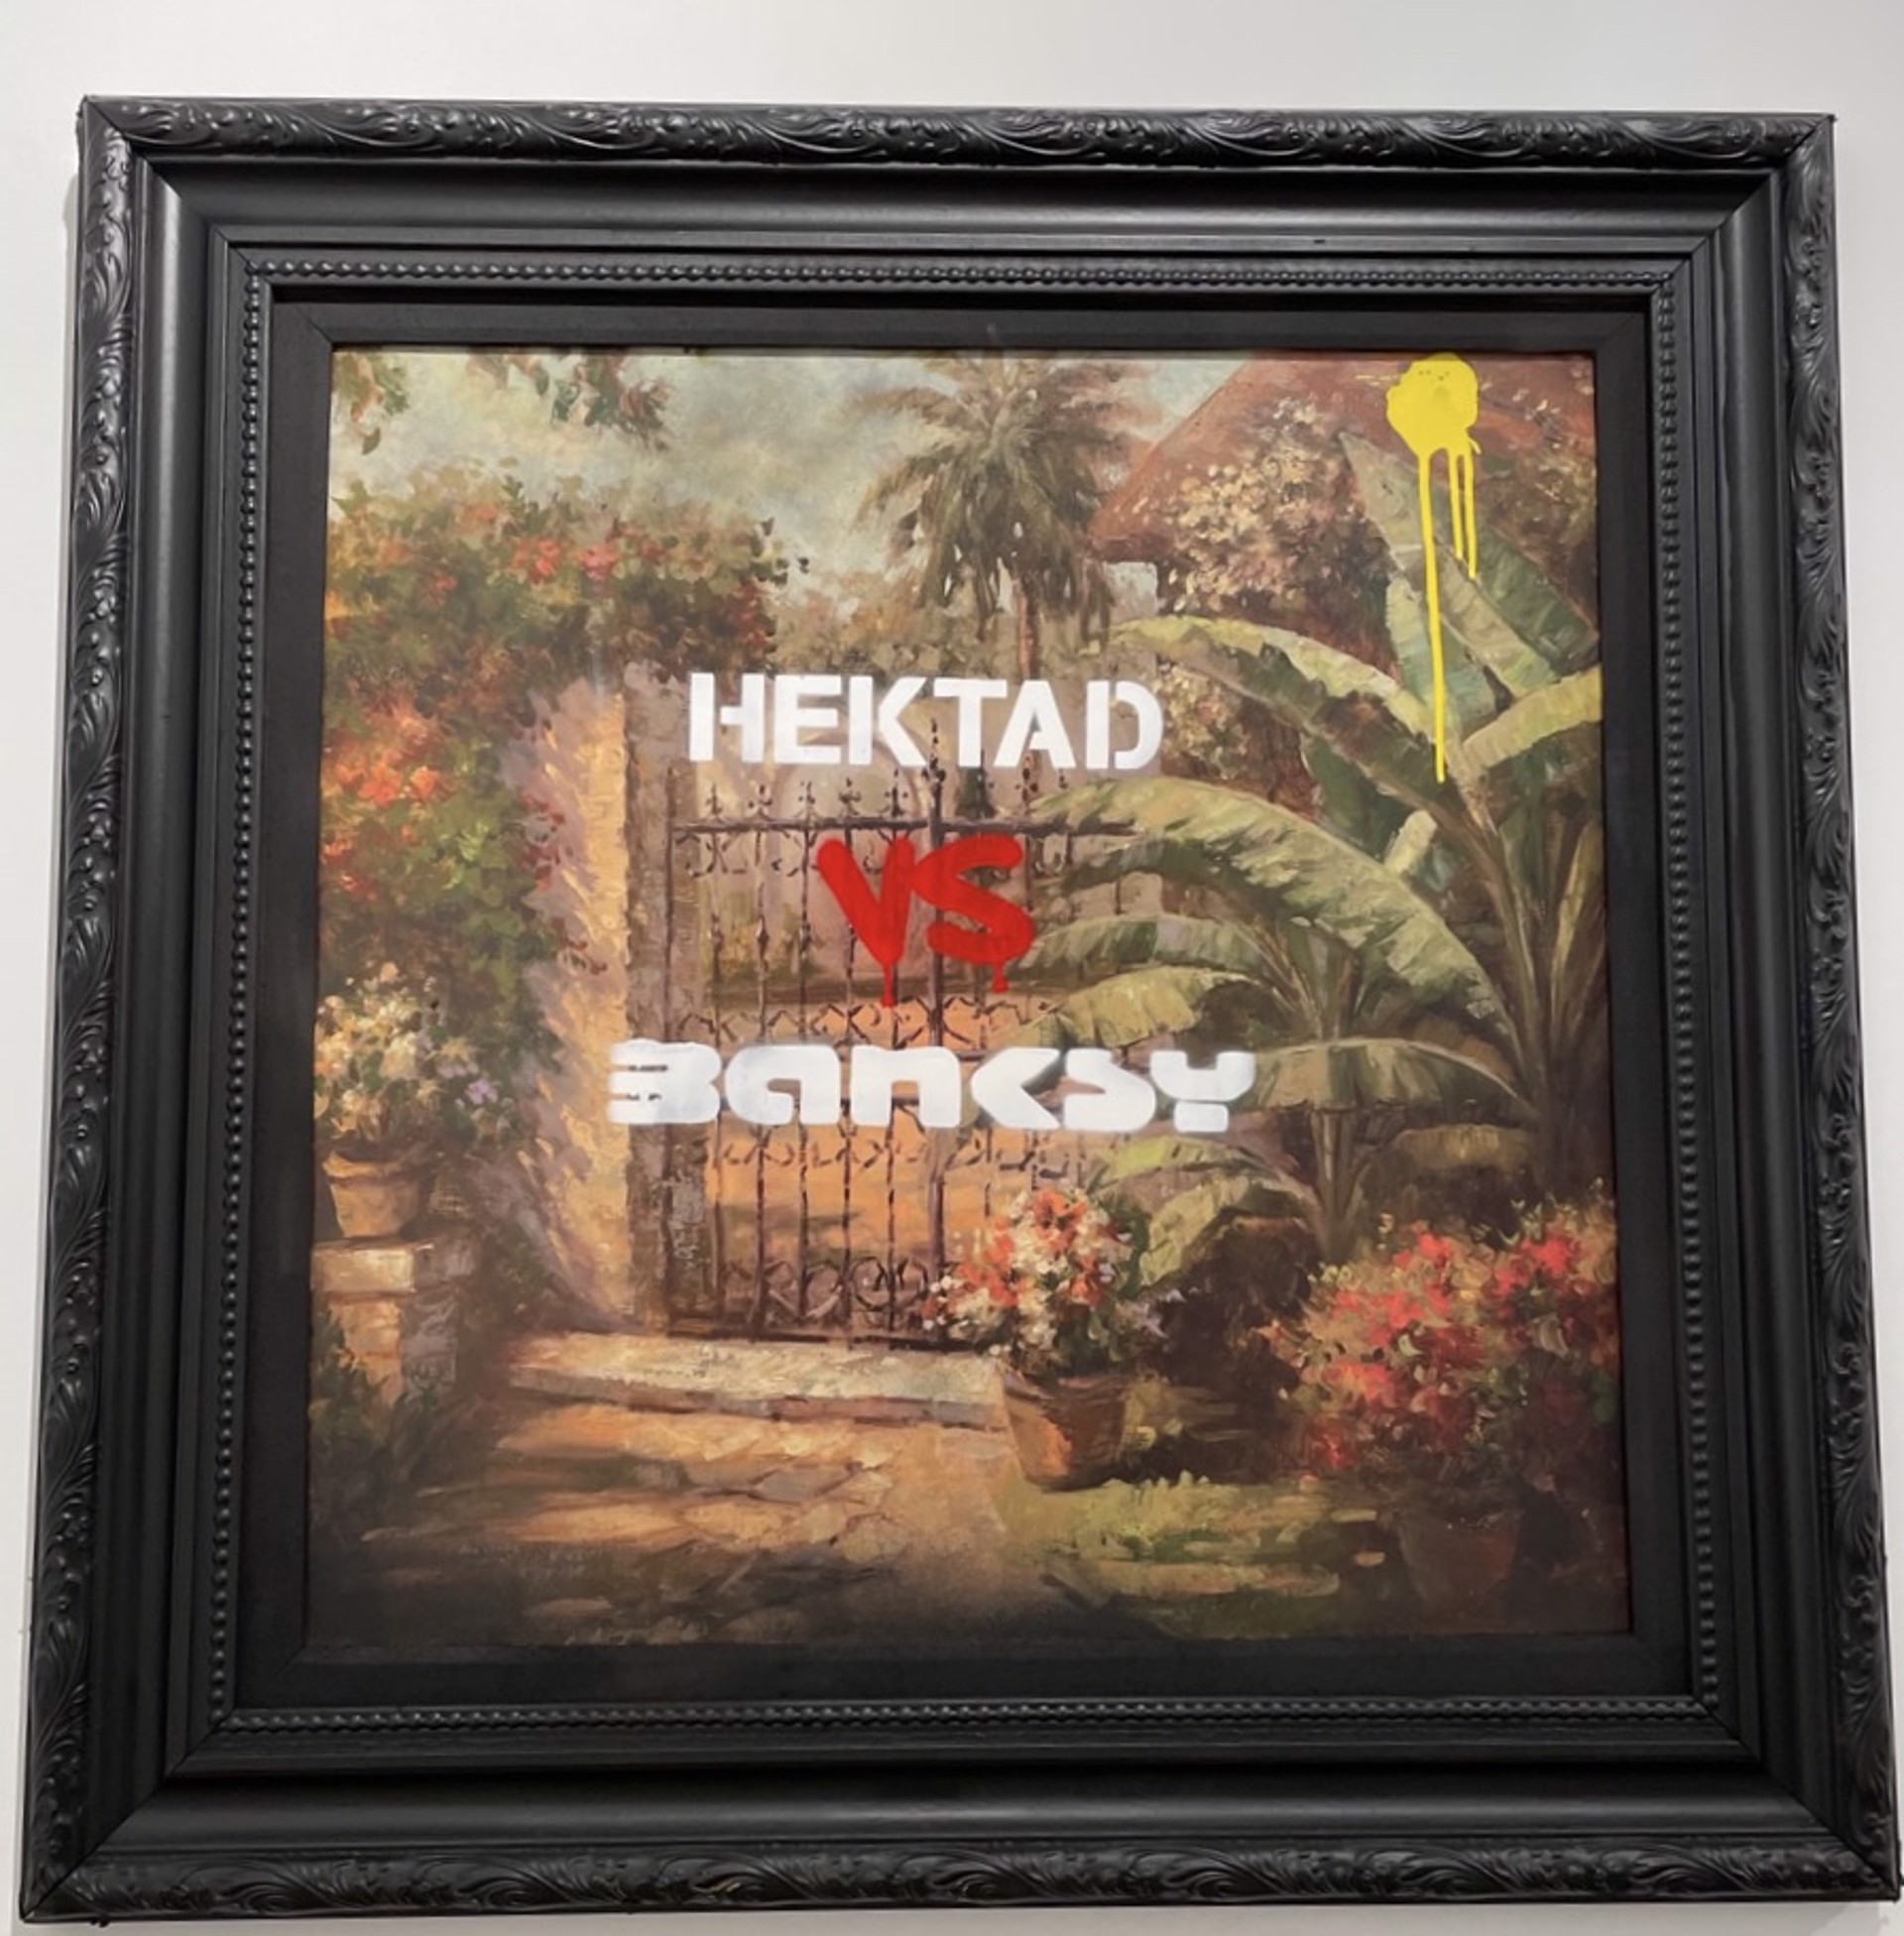 Hektad vs Banksy by HEKTAD